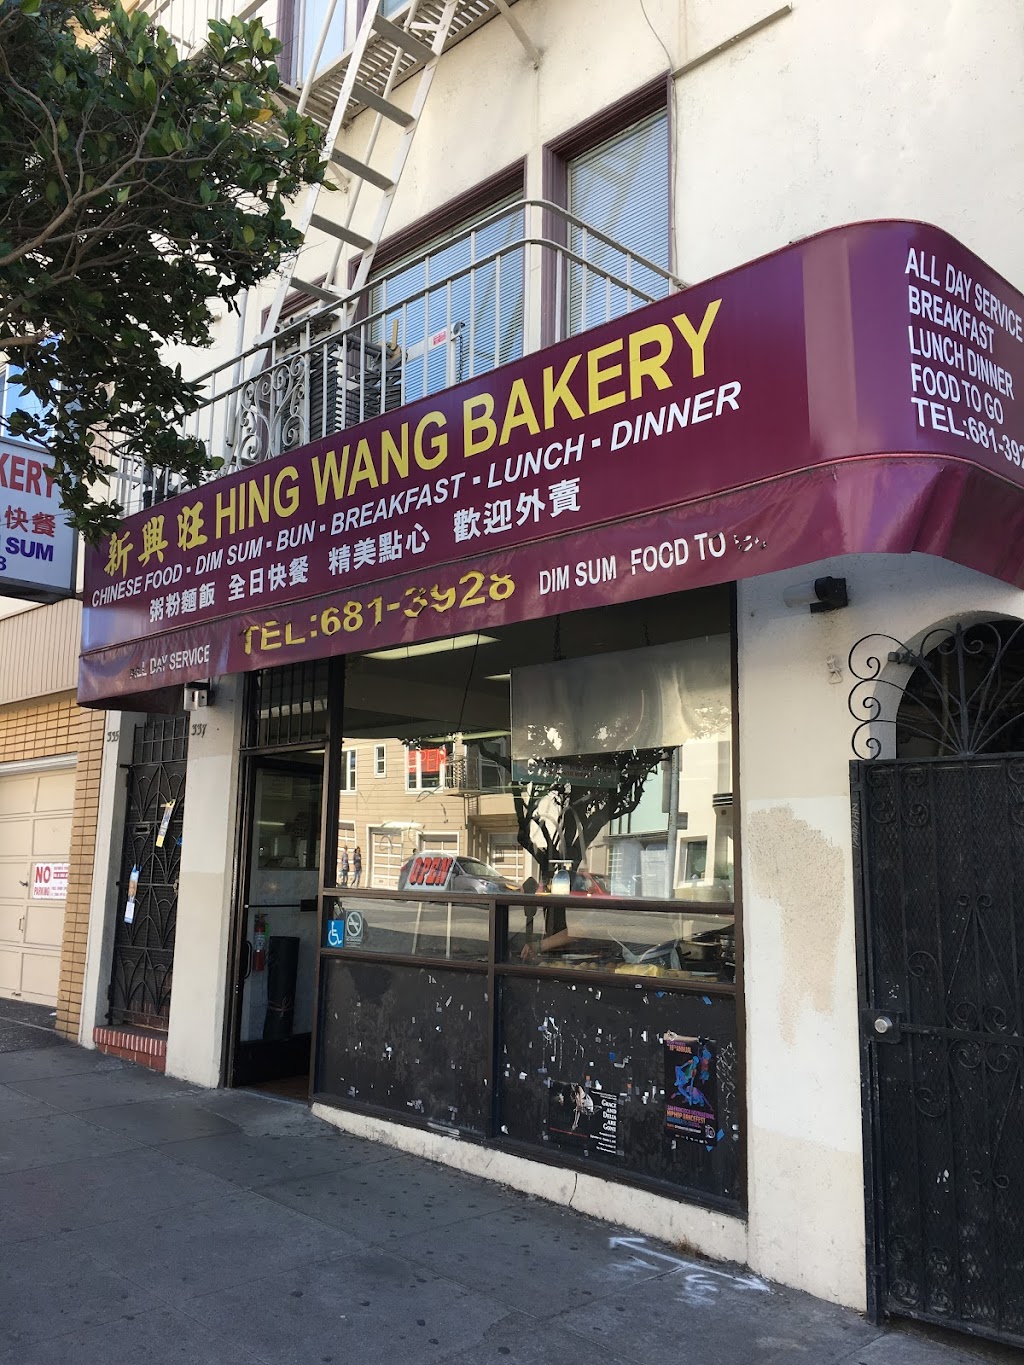 Hing Wang Bakery | 339 Judah St, San Francisco, CA 94122 | Phone: (415) 681-3928